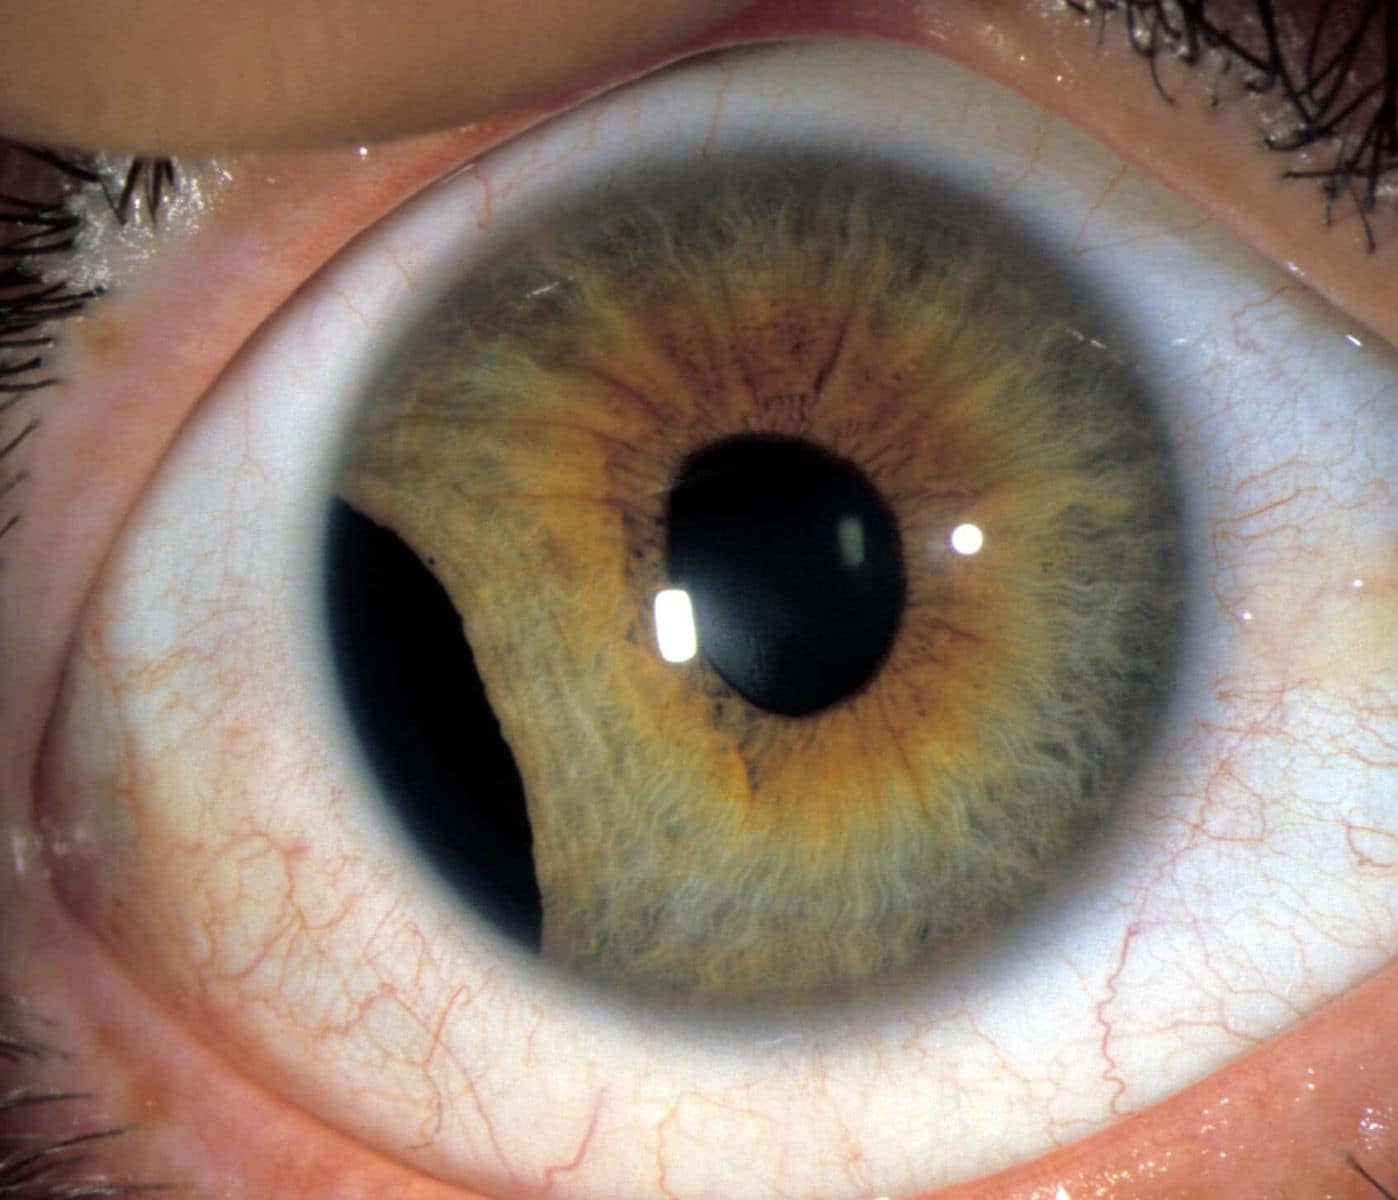 eye with iris trauma